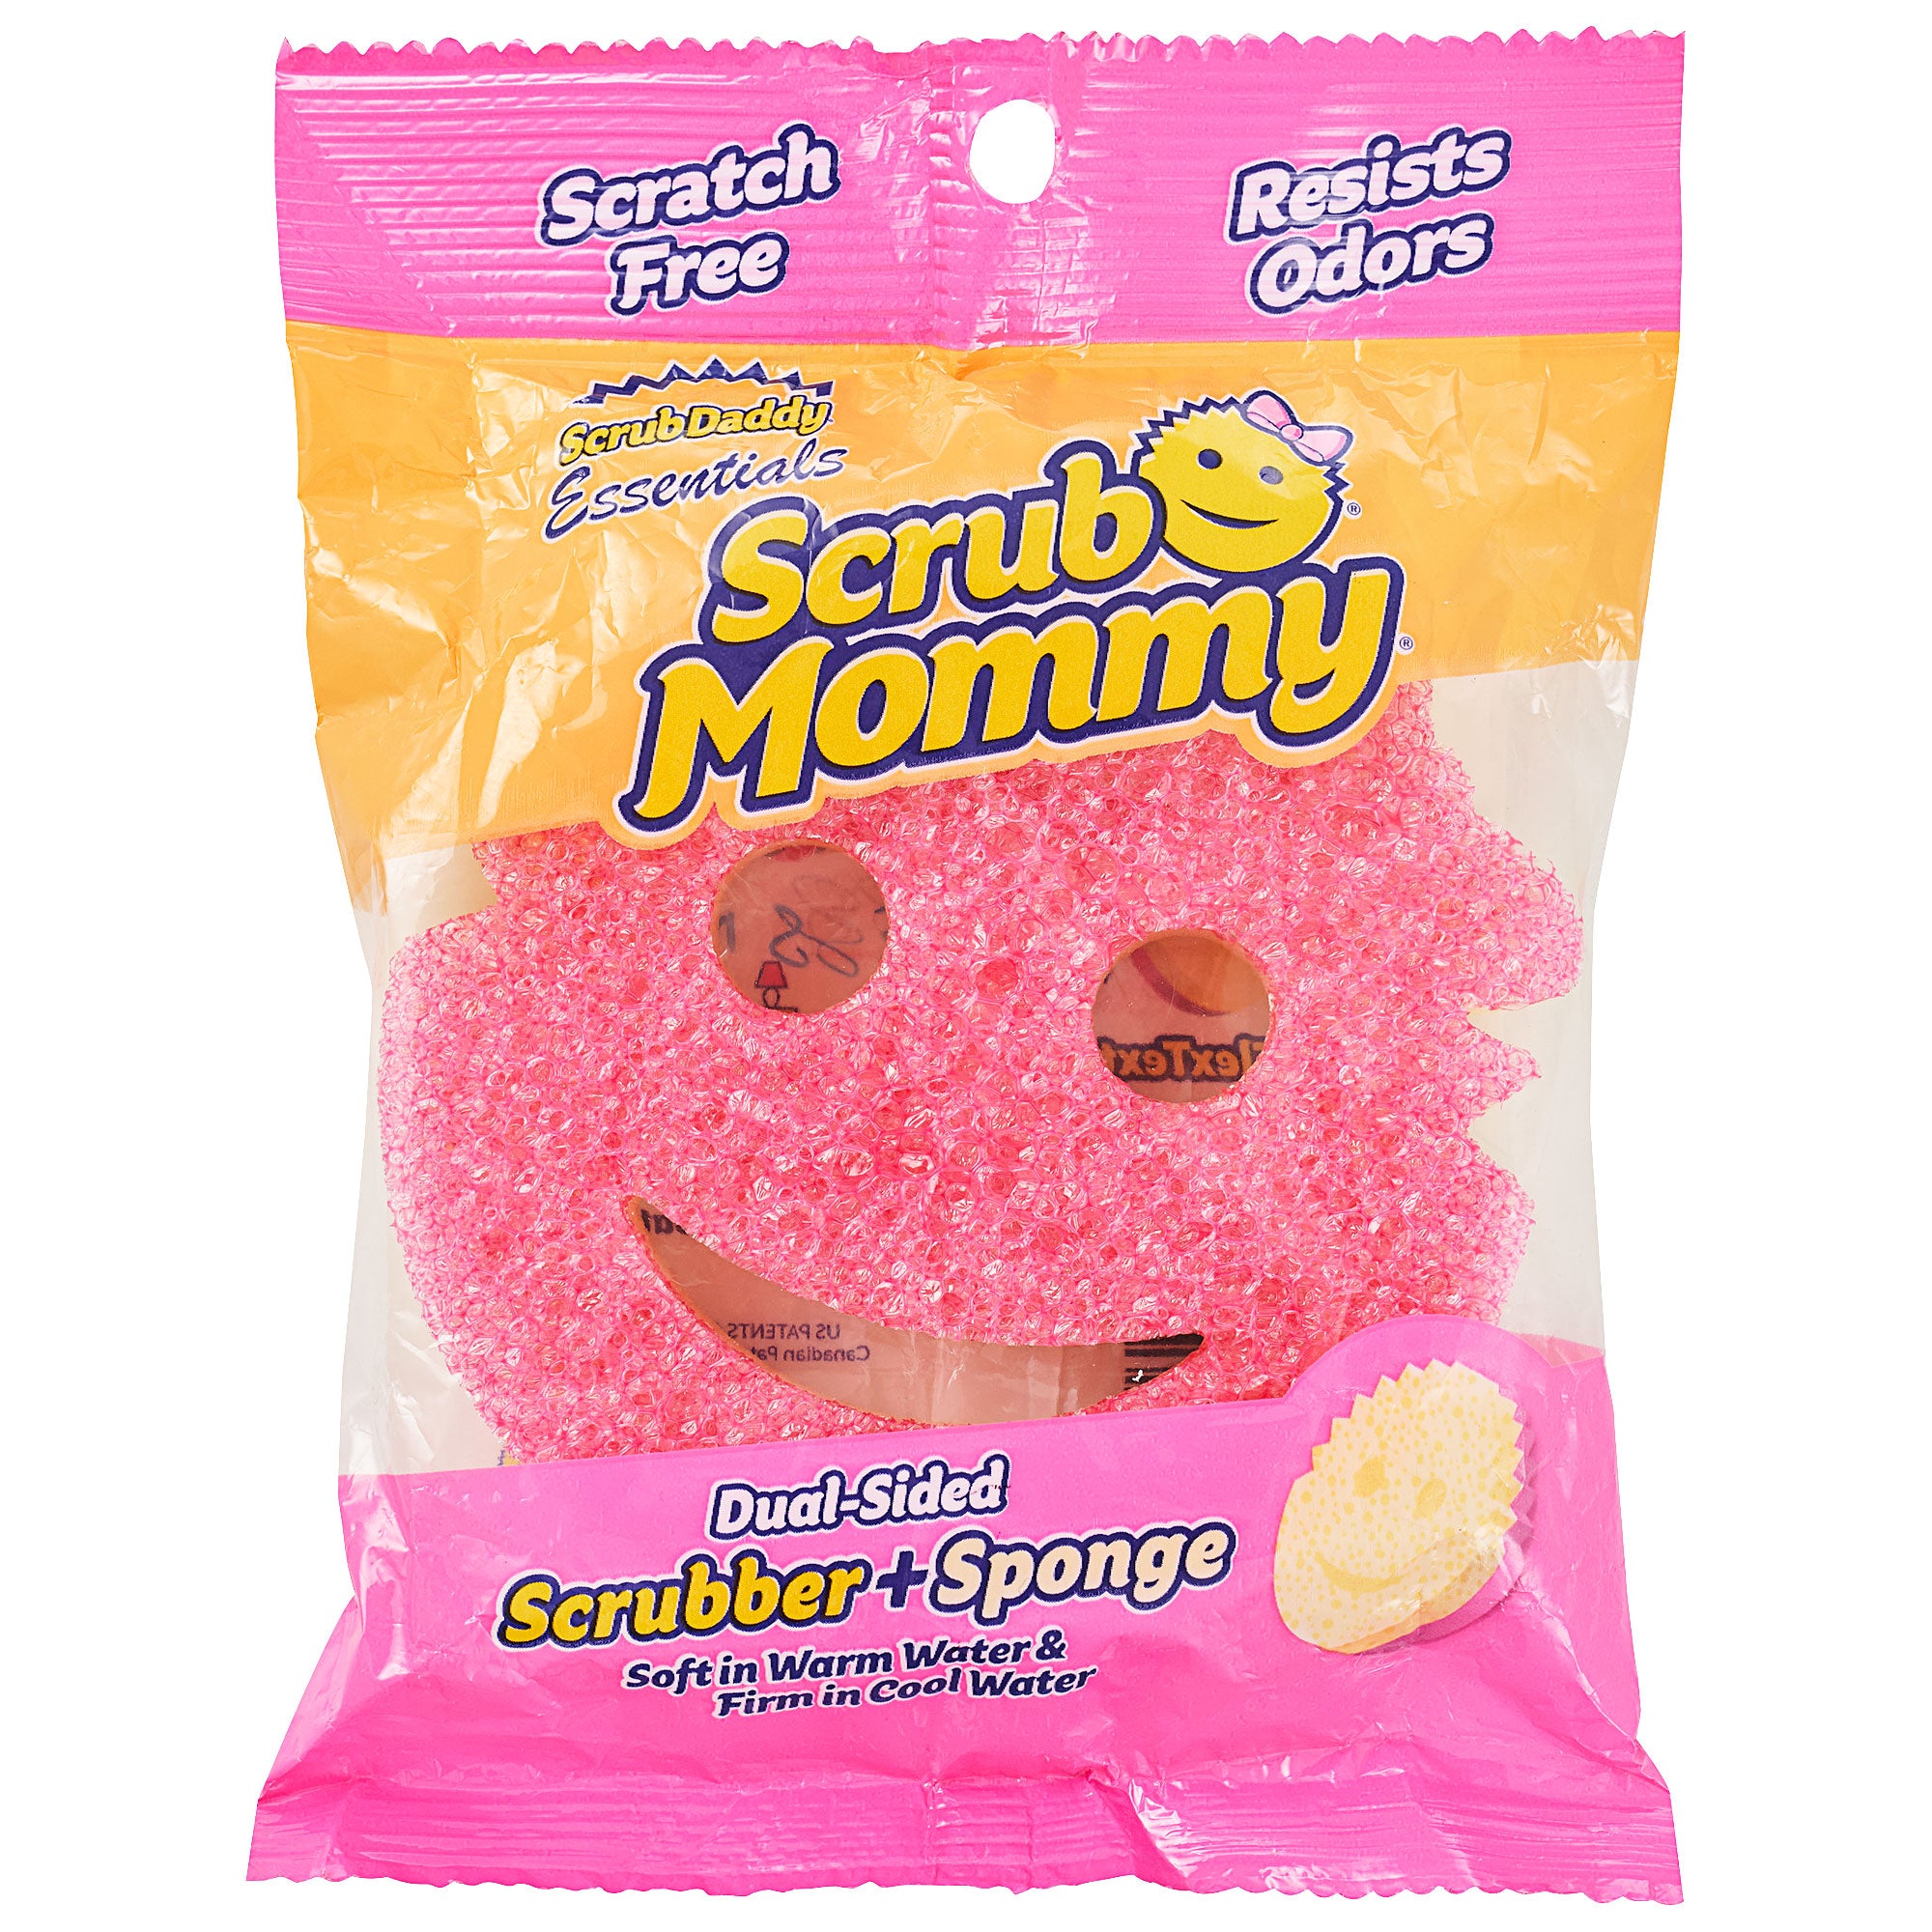 Scrub Daddy Essentials Scrub Mommy